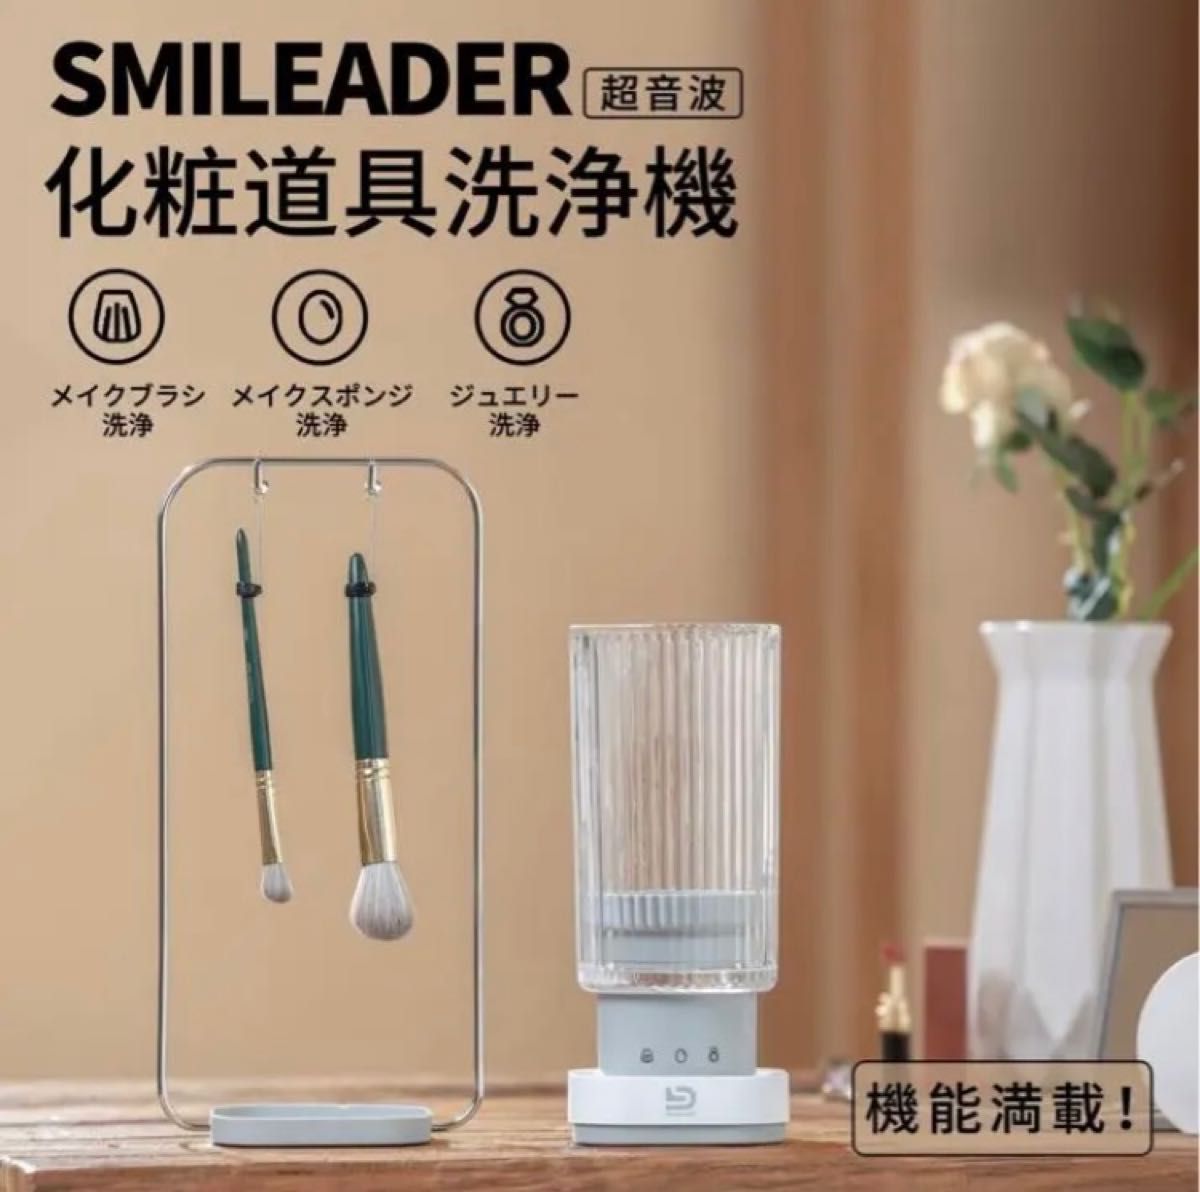 【新品未使用】Smileader 超音波化粧道具洗浄機 ウルトラソニック洗浄